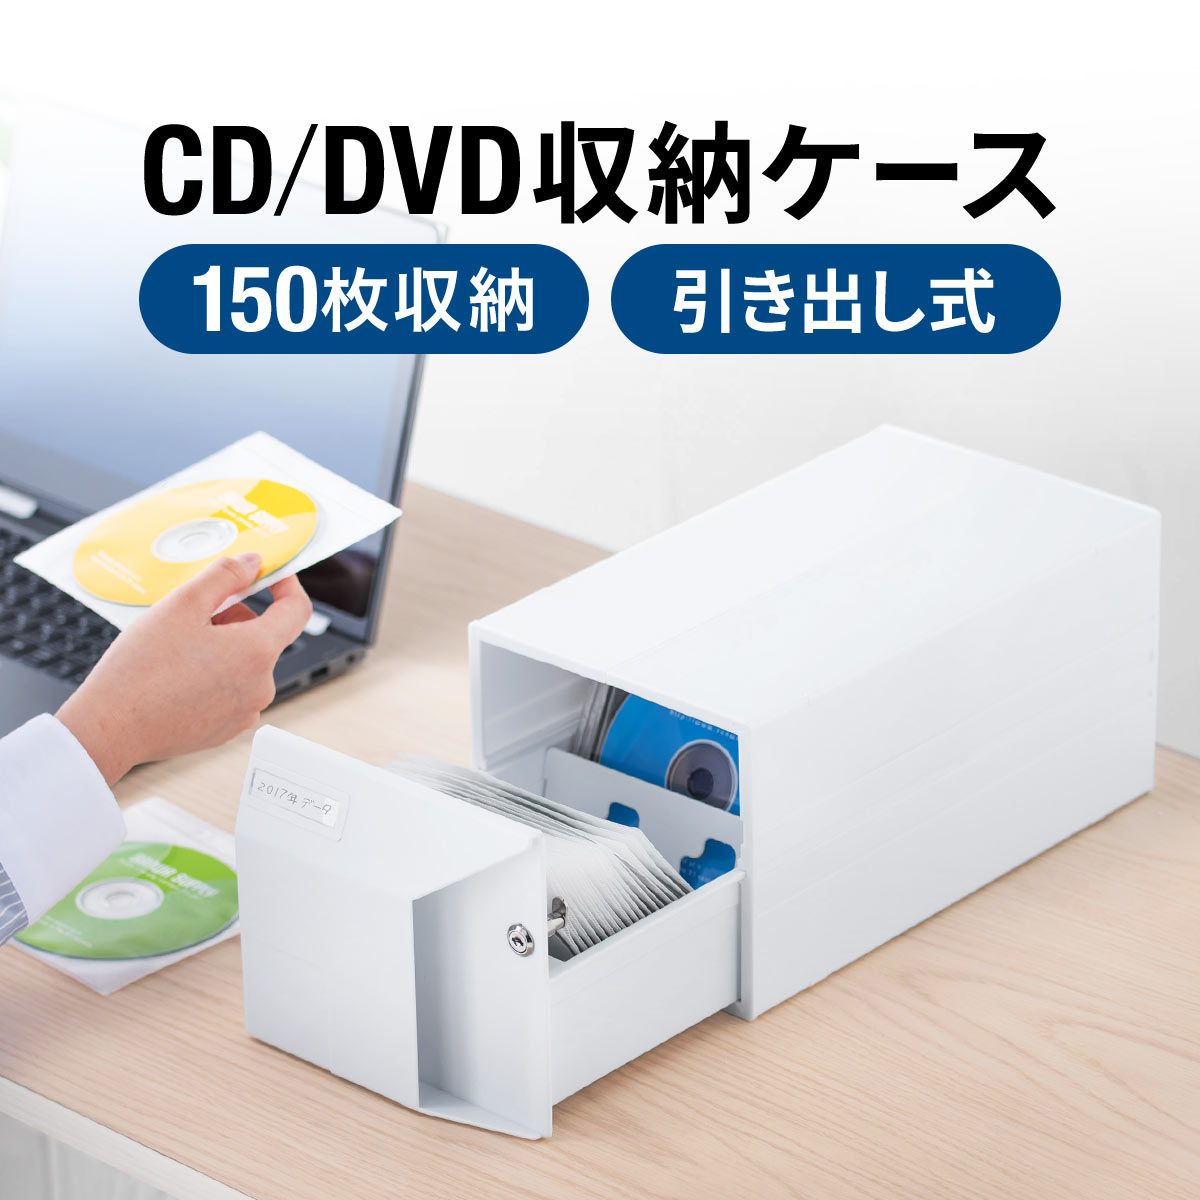 ボックスケース DVD CD メディアメース 鍵付き 引き出し式 スタッキング対応 大容量収納ケース 小物収納 EZ2-FCD064